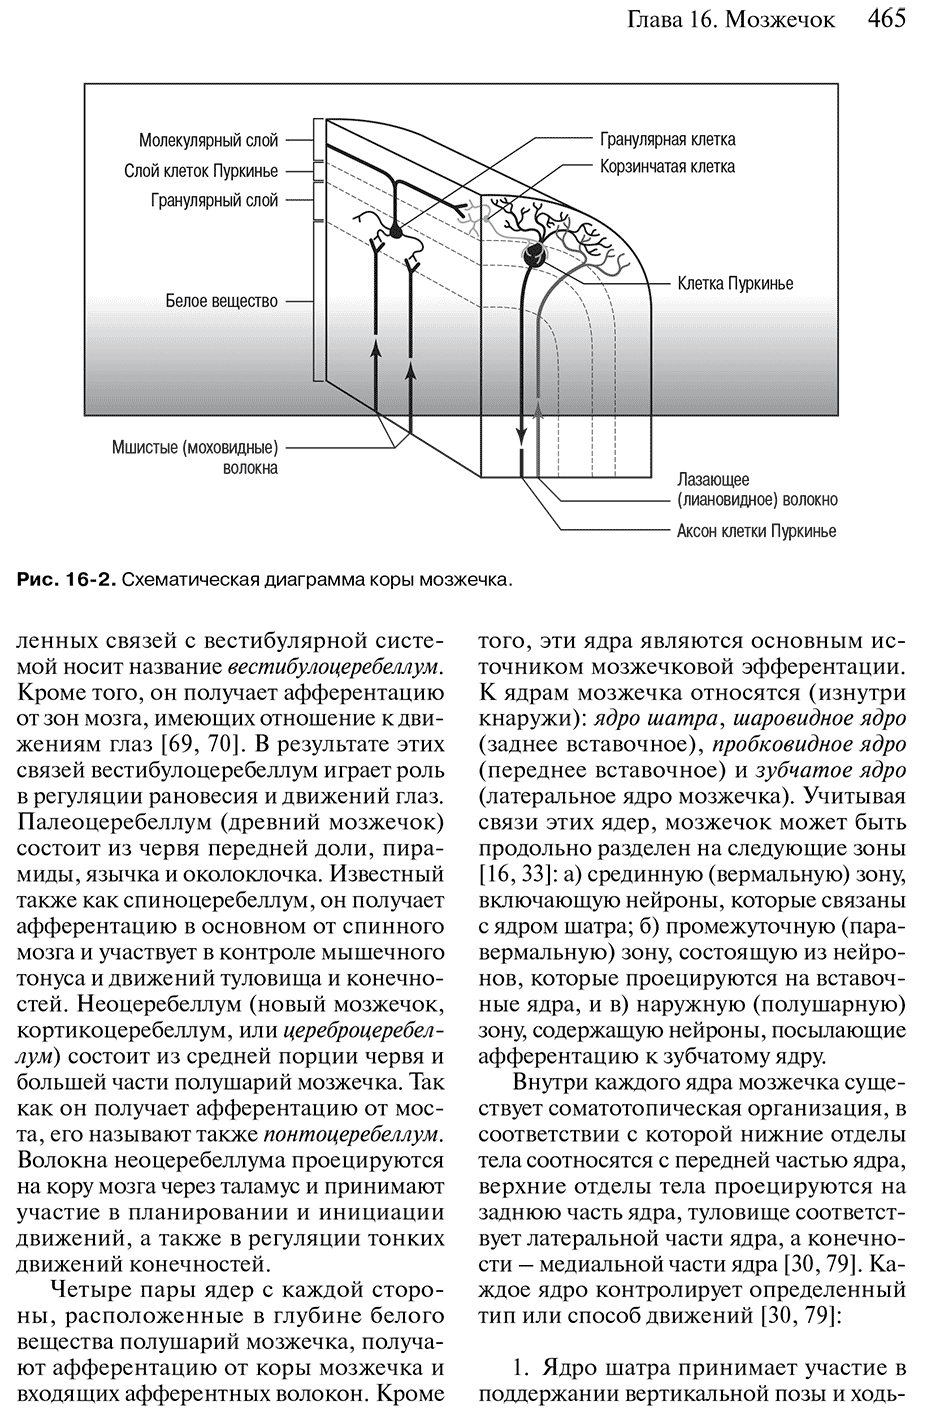 Рис. 16-2. Схематическая диаграмма коры мозжечка.